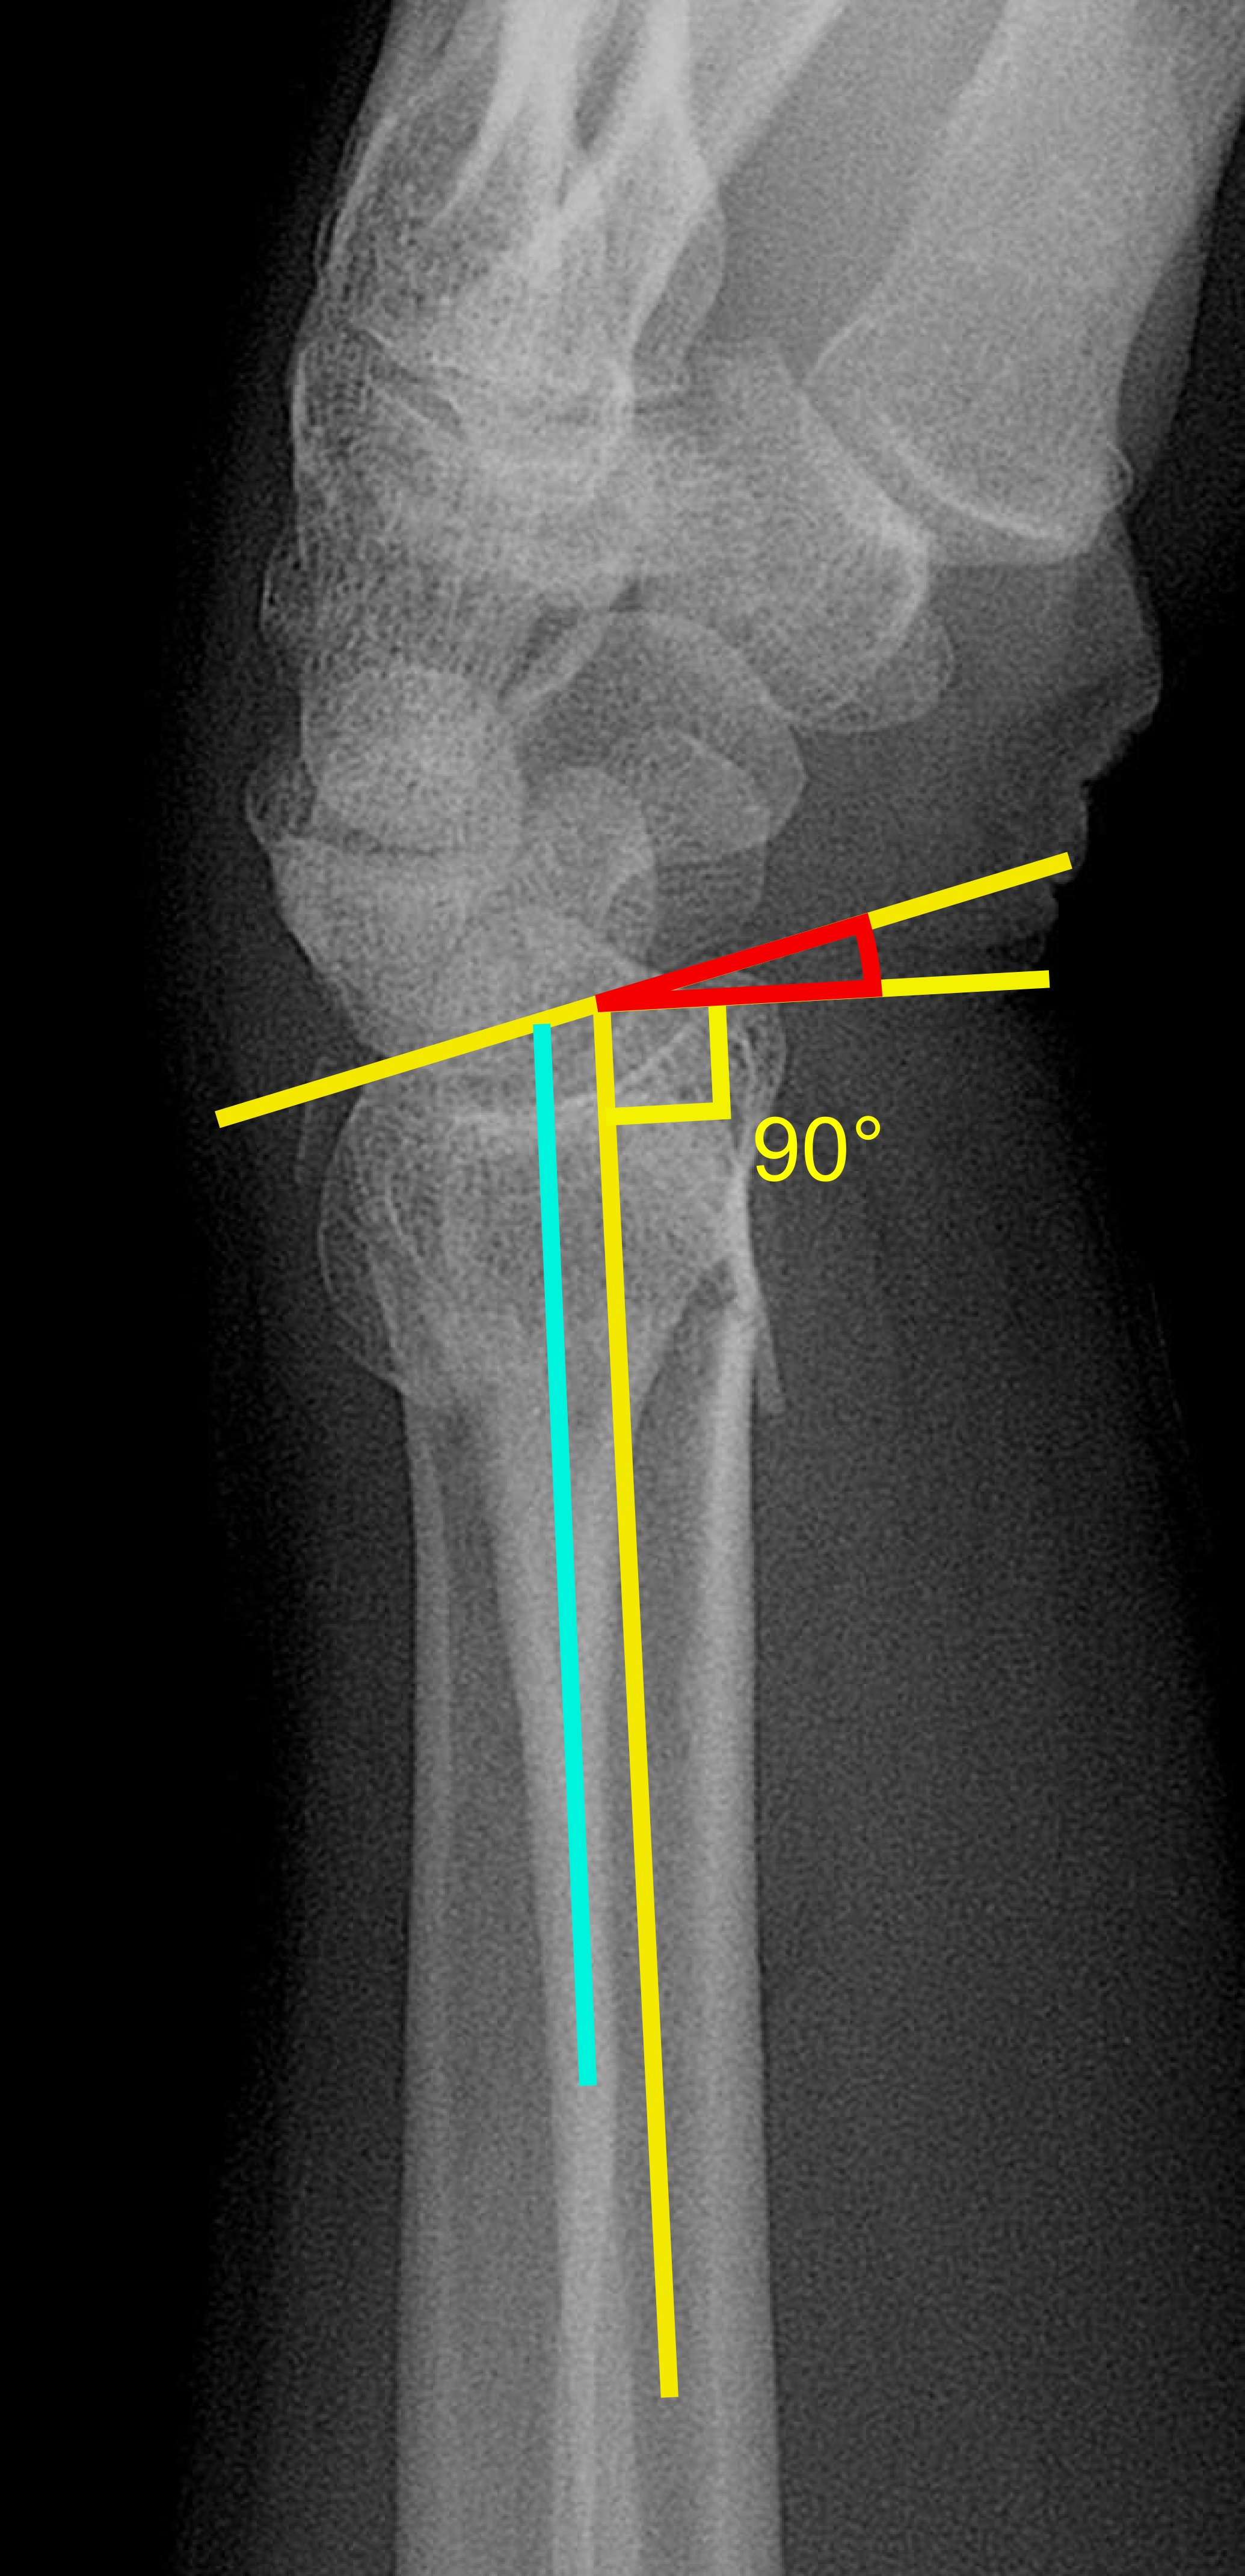 File:Dorsal tilt of distal radius fracture.jpg